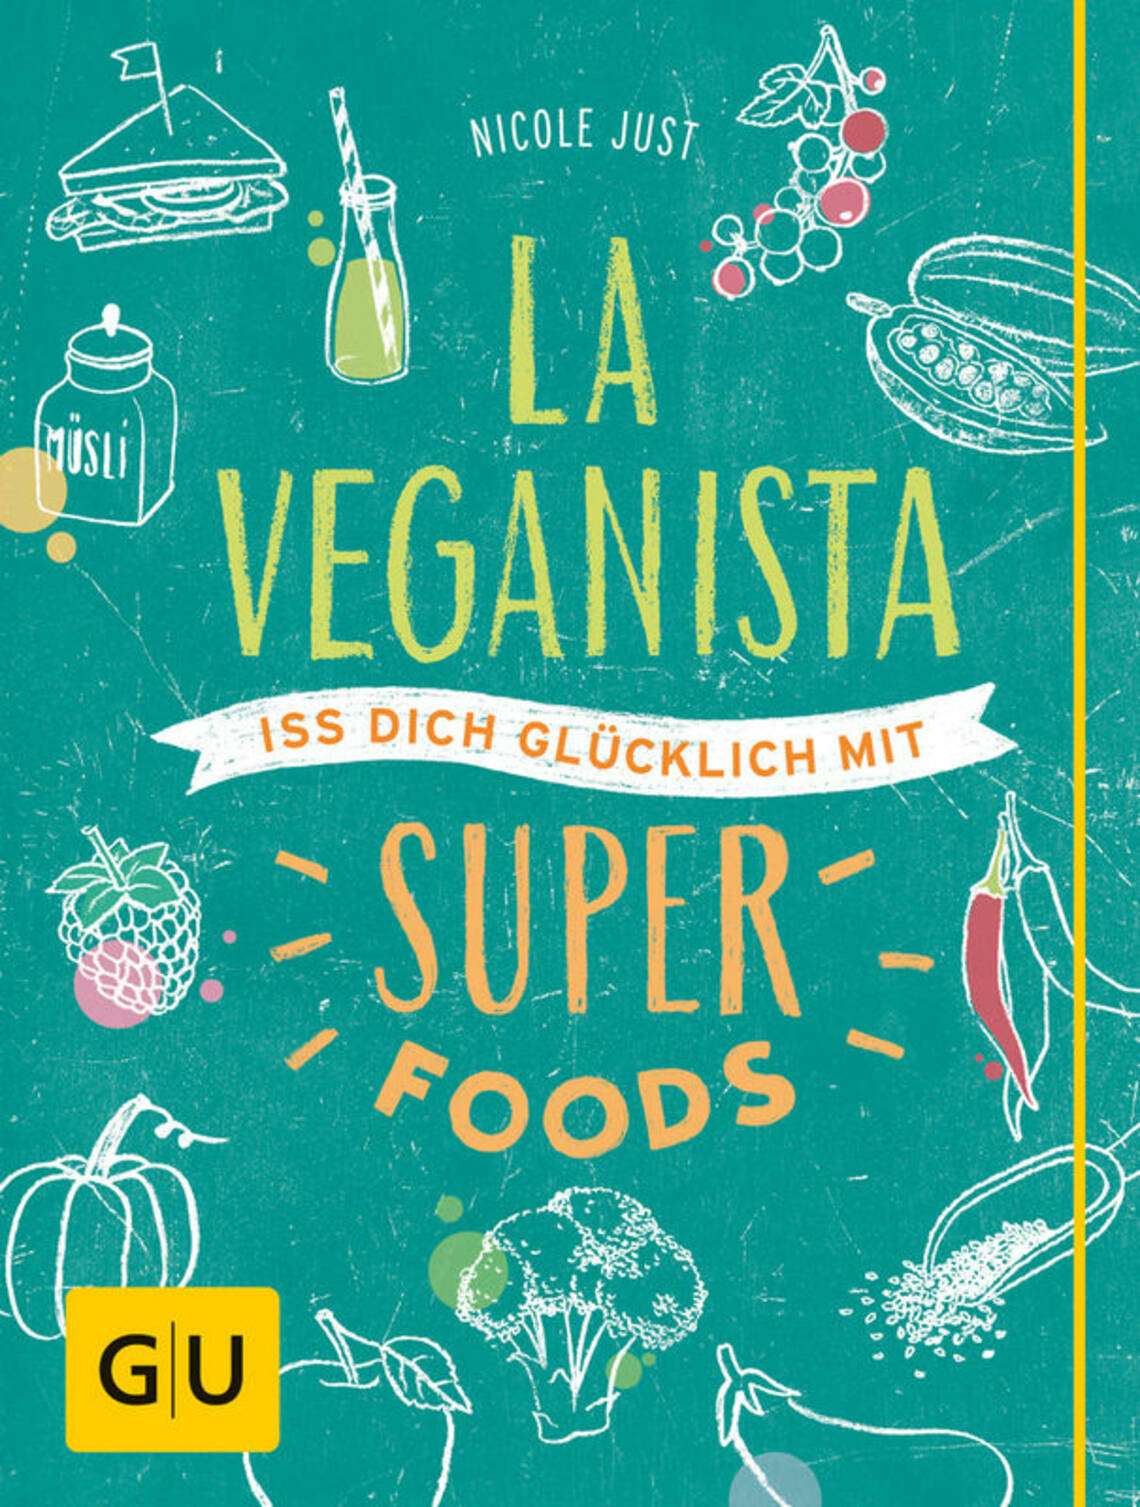 La Veganista. Iss dich glücklich mit Superfoods von Nicole Just